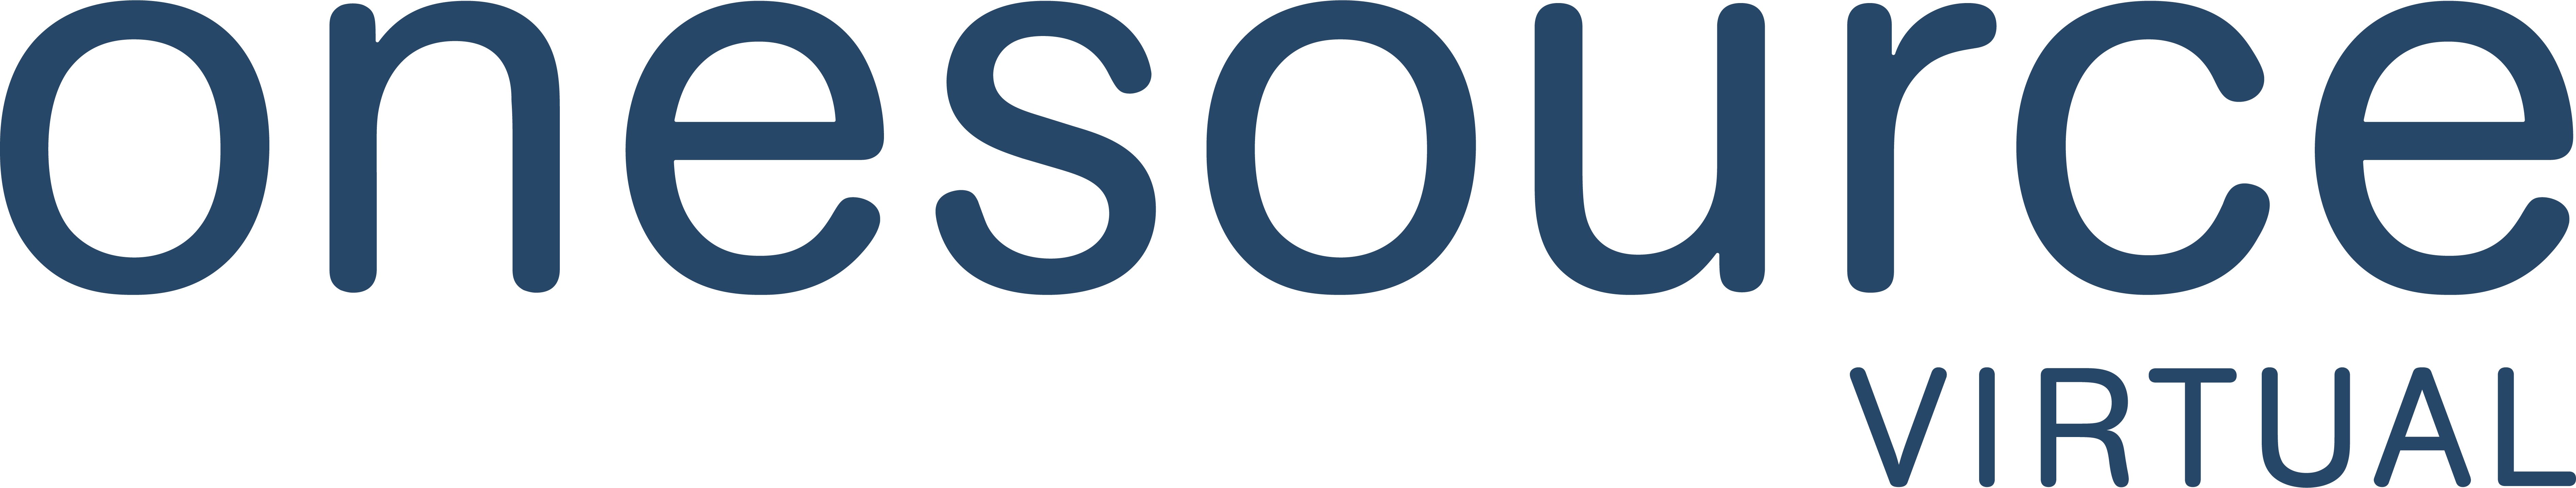 OSV_Logo_Indigo